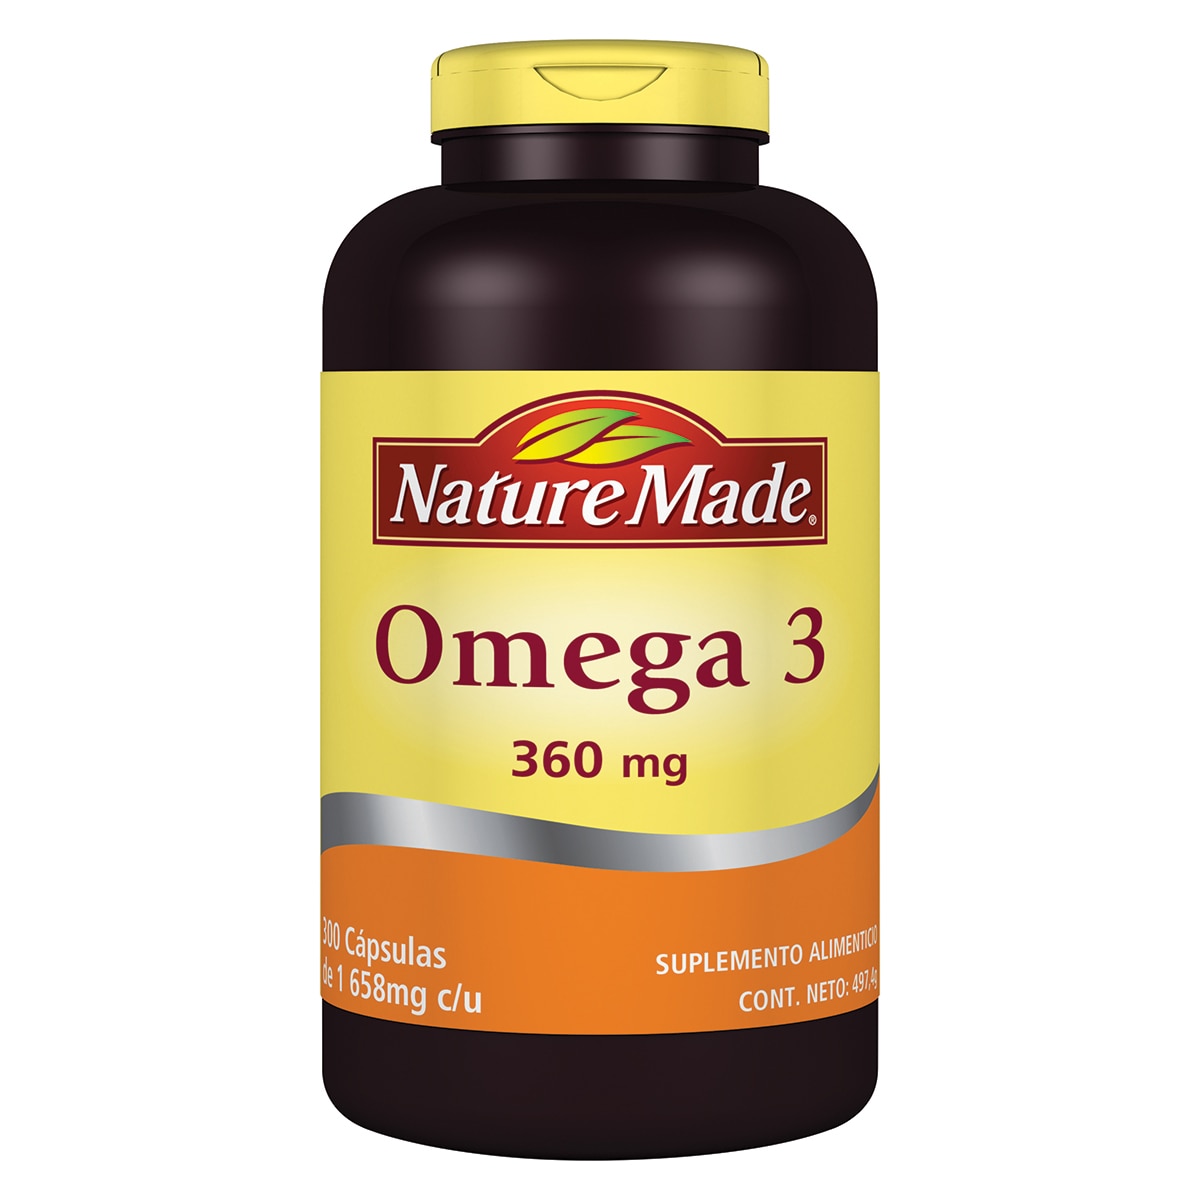 omega 3 nature made costco